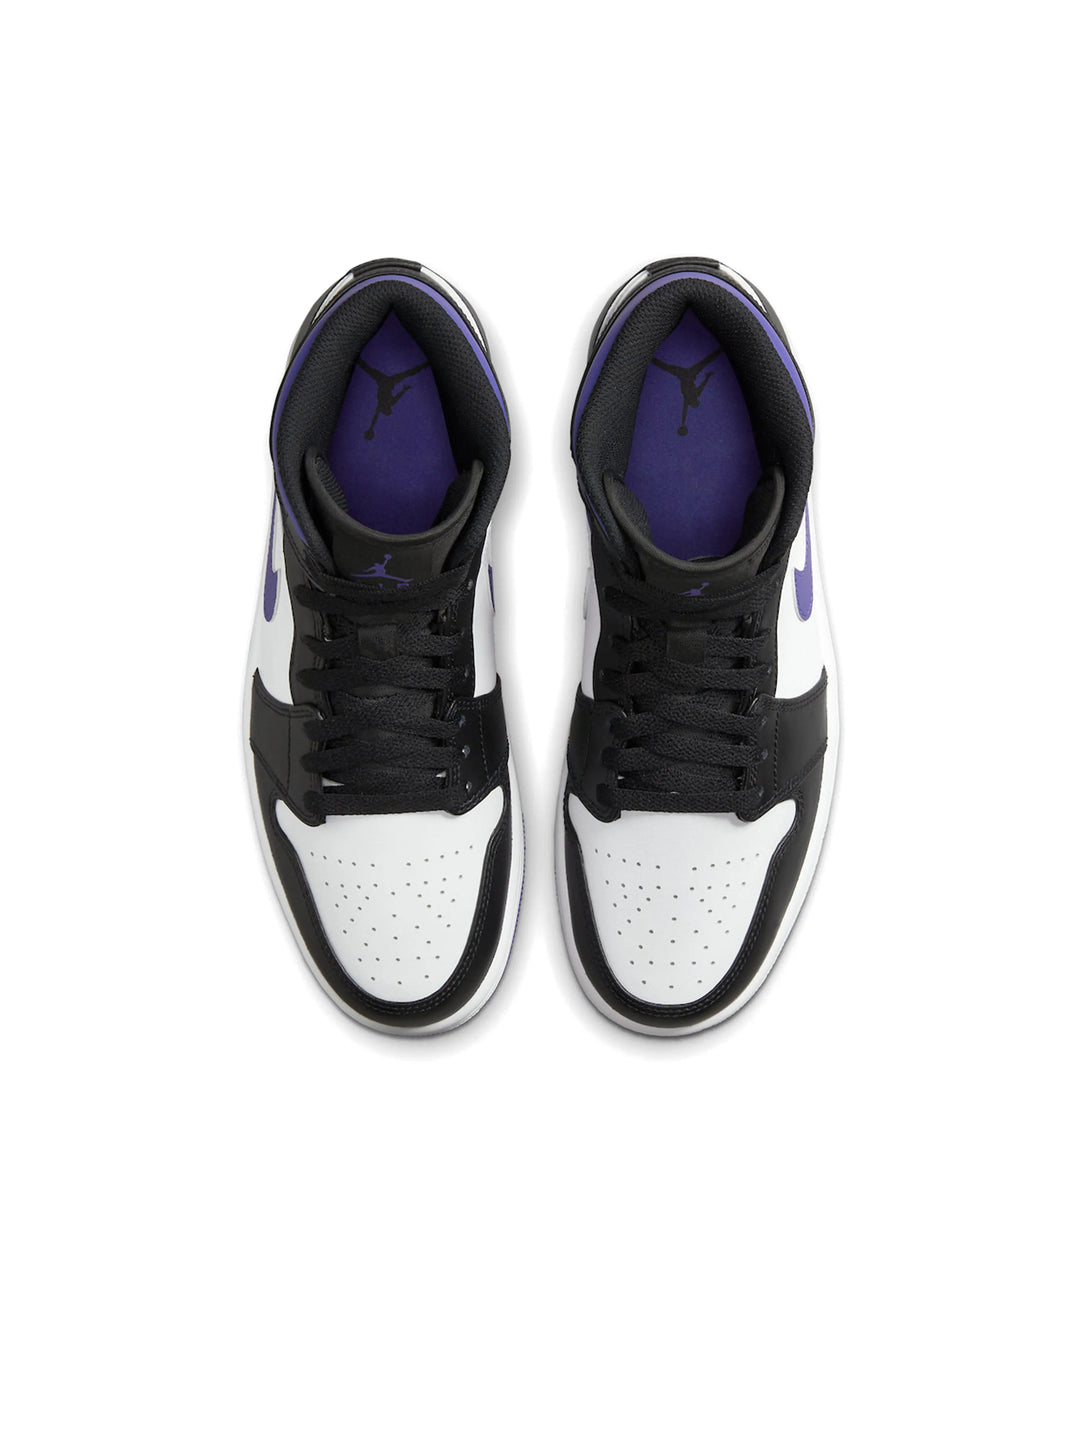 Nike Air Jordan 1 Mid Dark Iris Prior